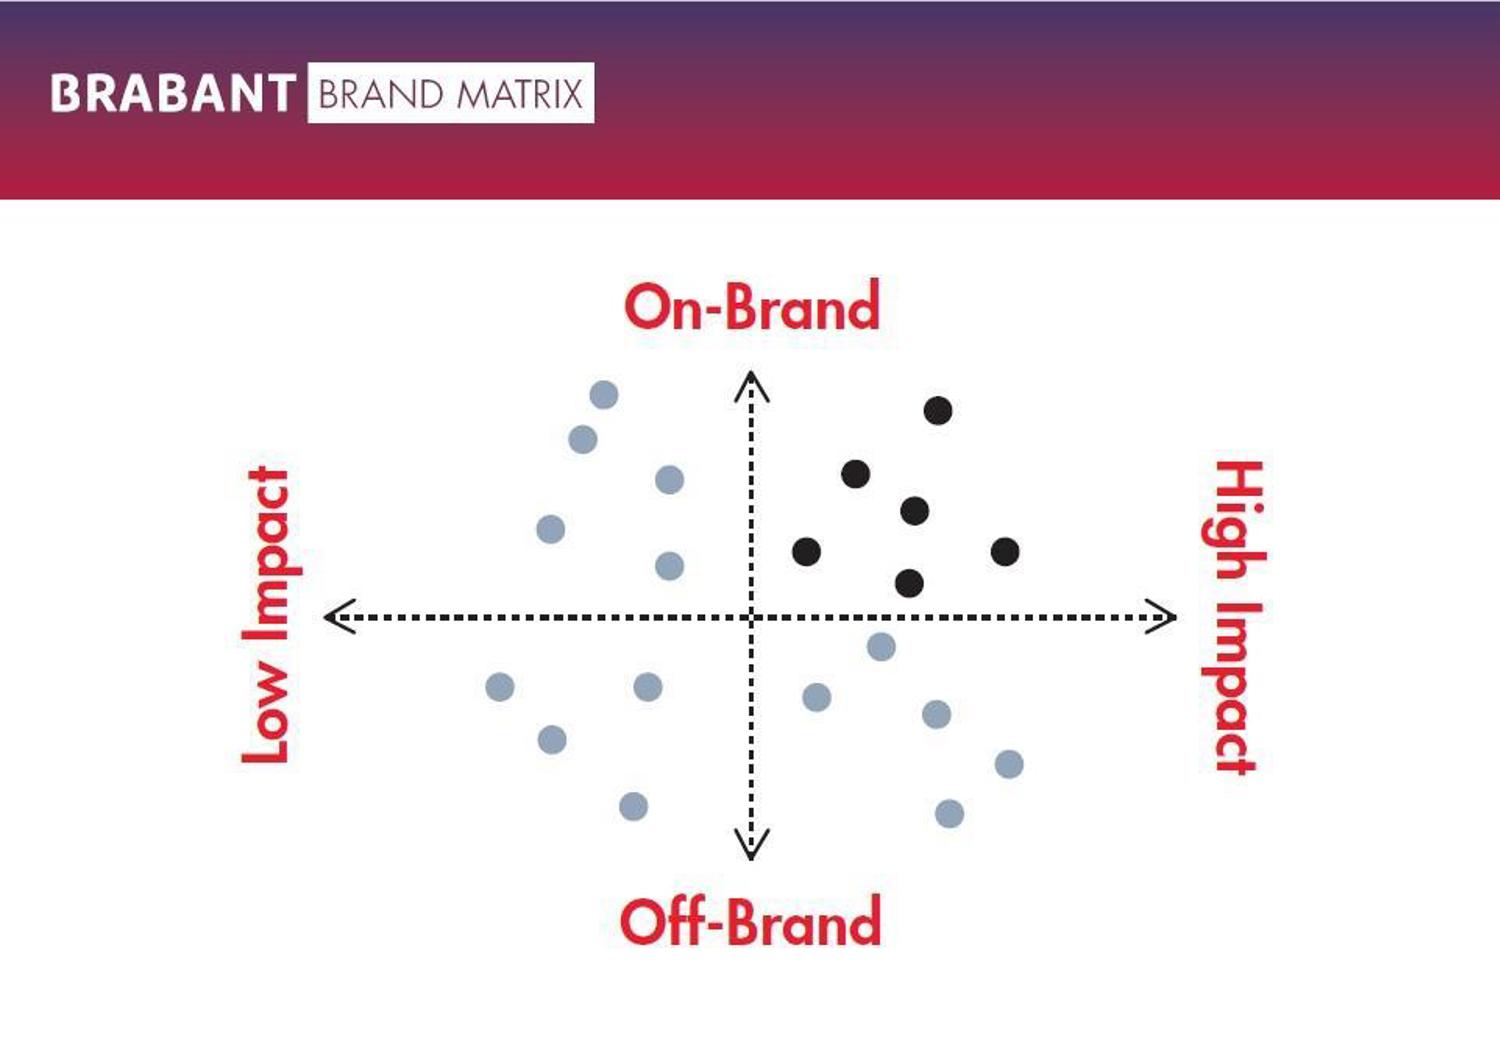 Gebruik en download onze brand matrix | Brabant Brand Box